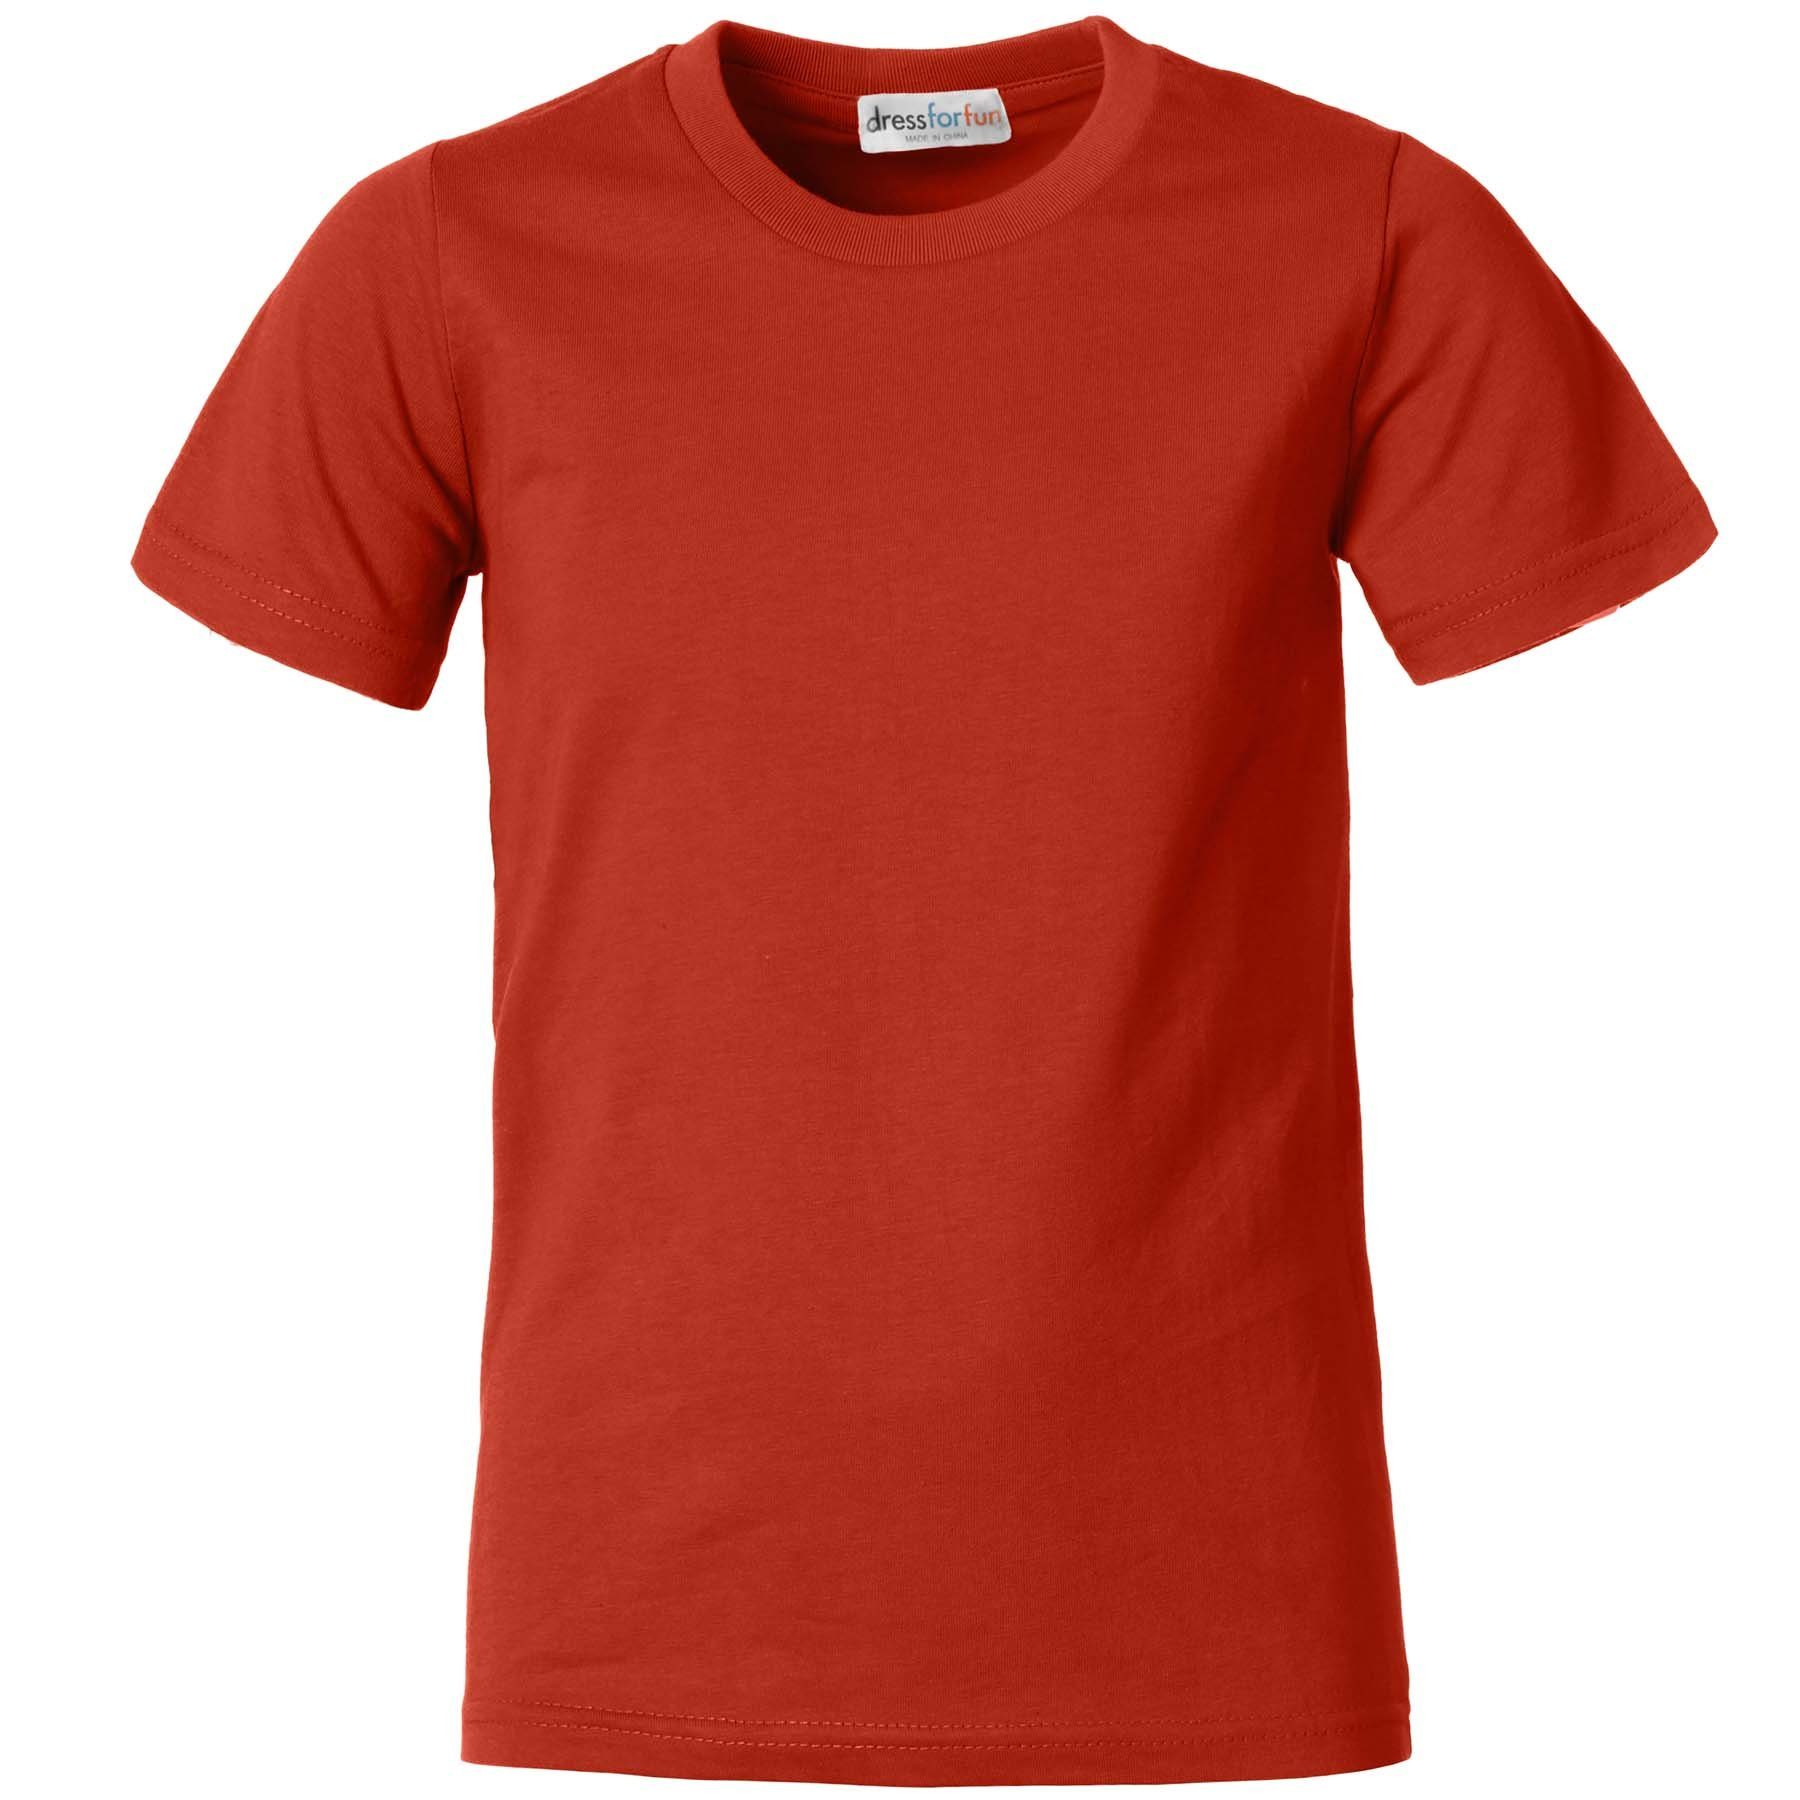 Männer weinrot dressforfun T-Shirt Rundhals T-Shirt